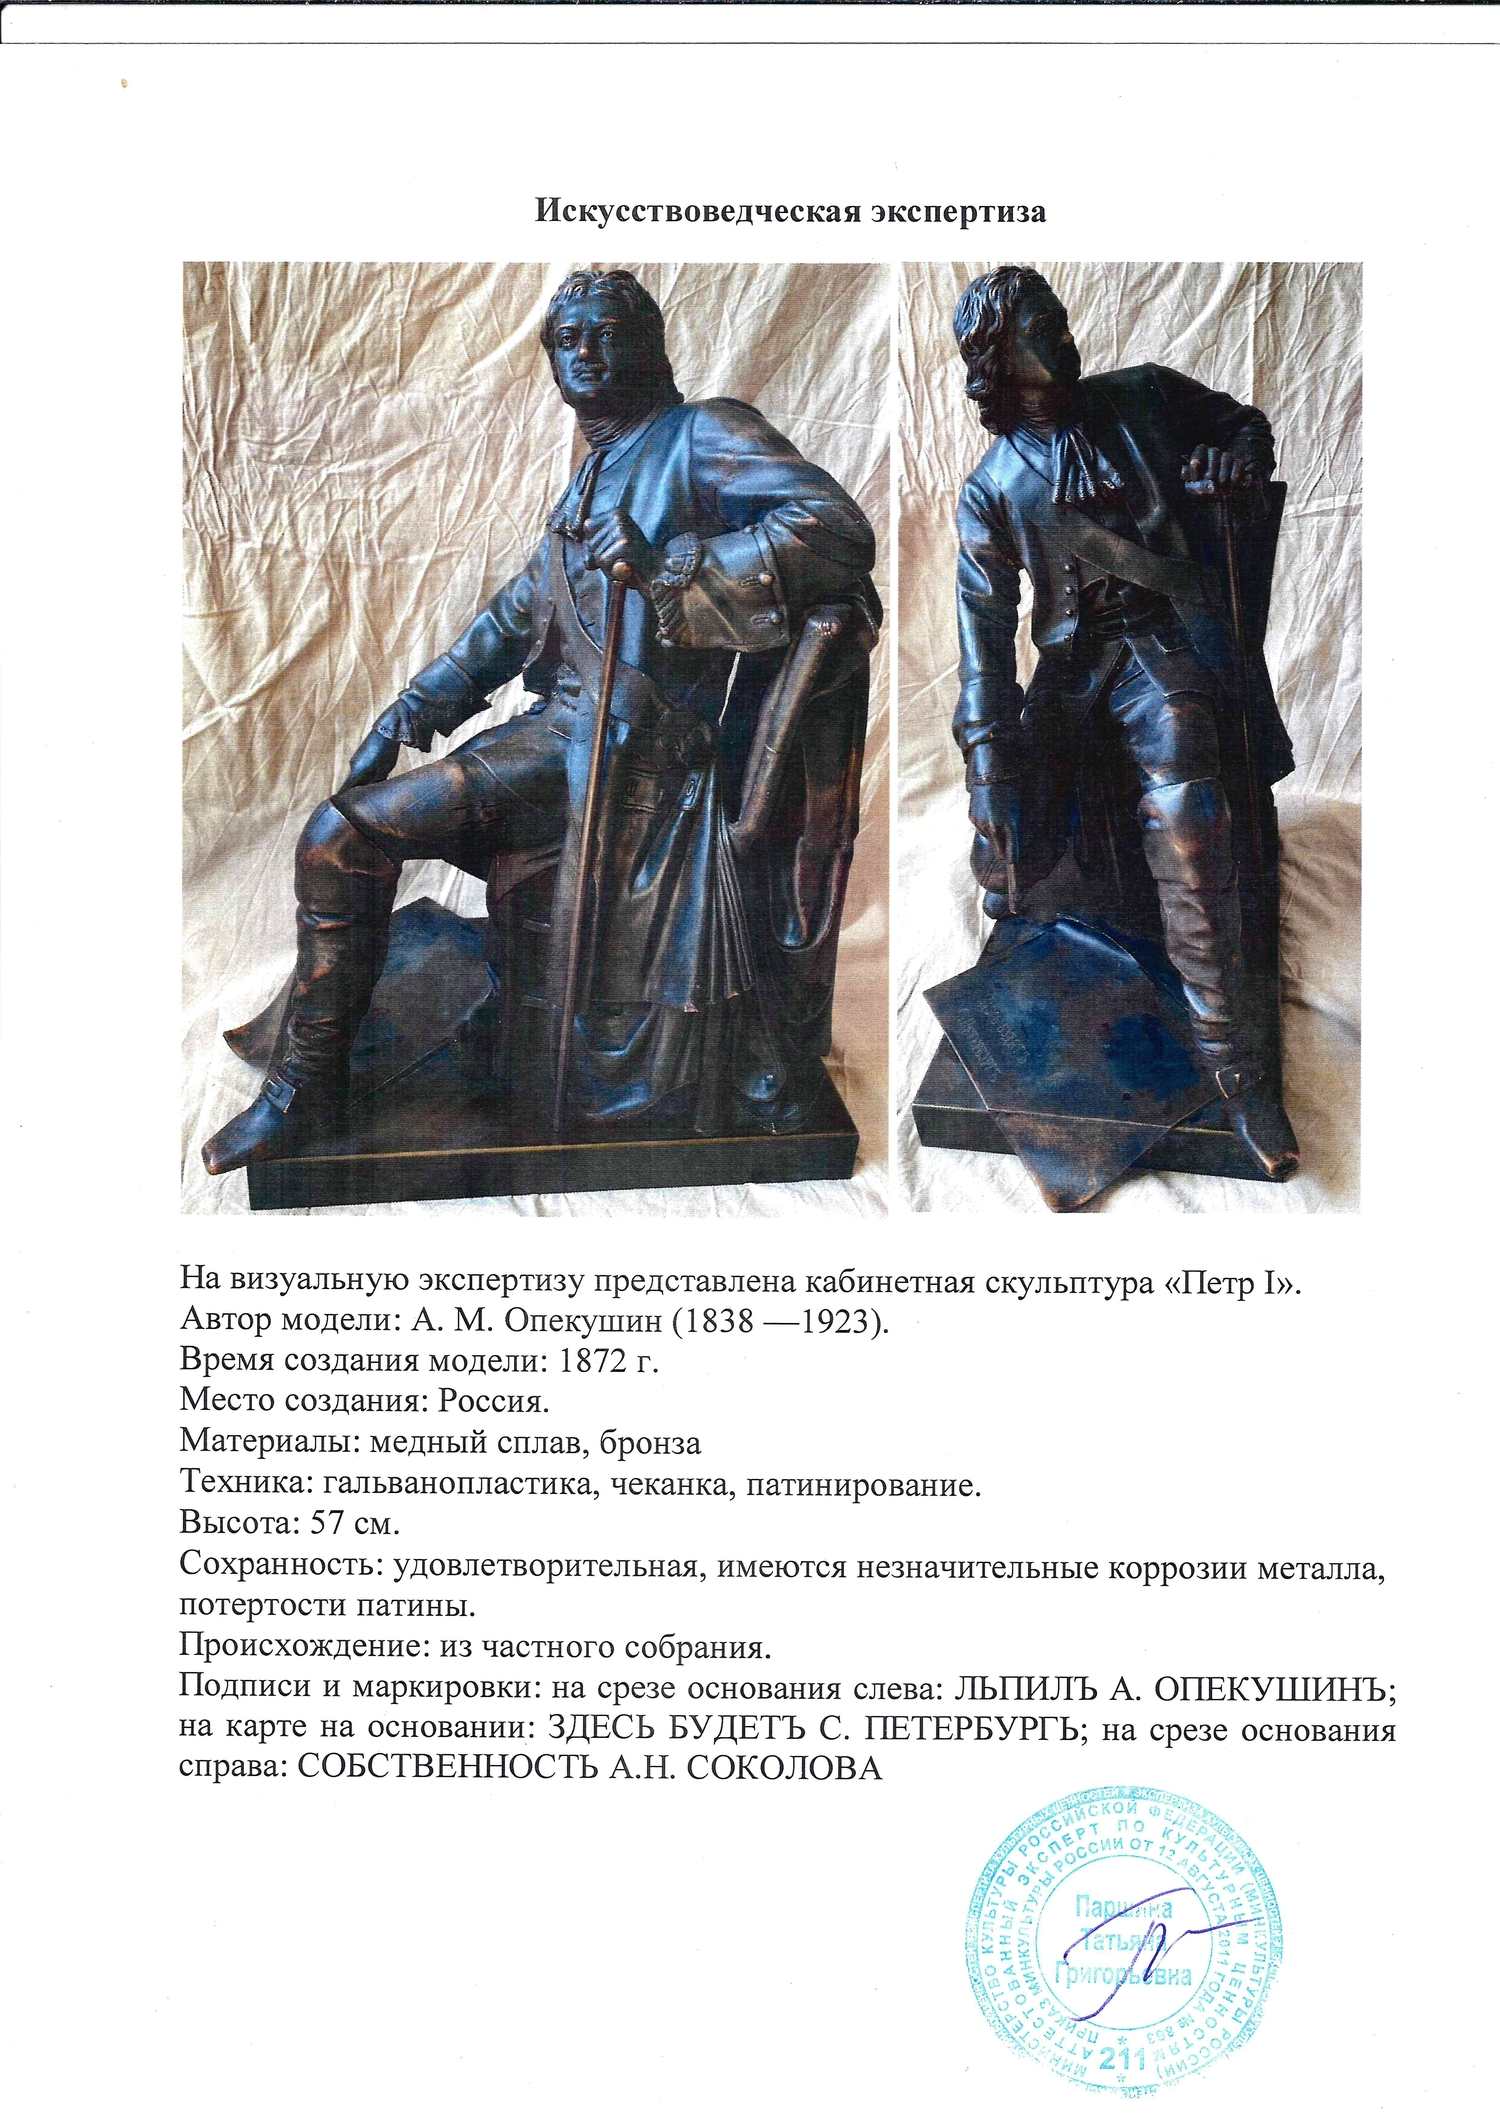 Кабинетная скульптура «Петр I». Россия, автор модели - А.М. Опекушин, 1872 г. С экспертизой.